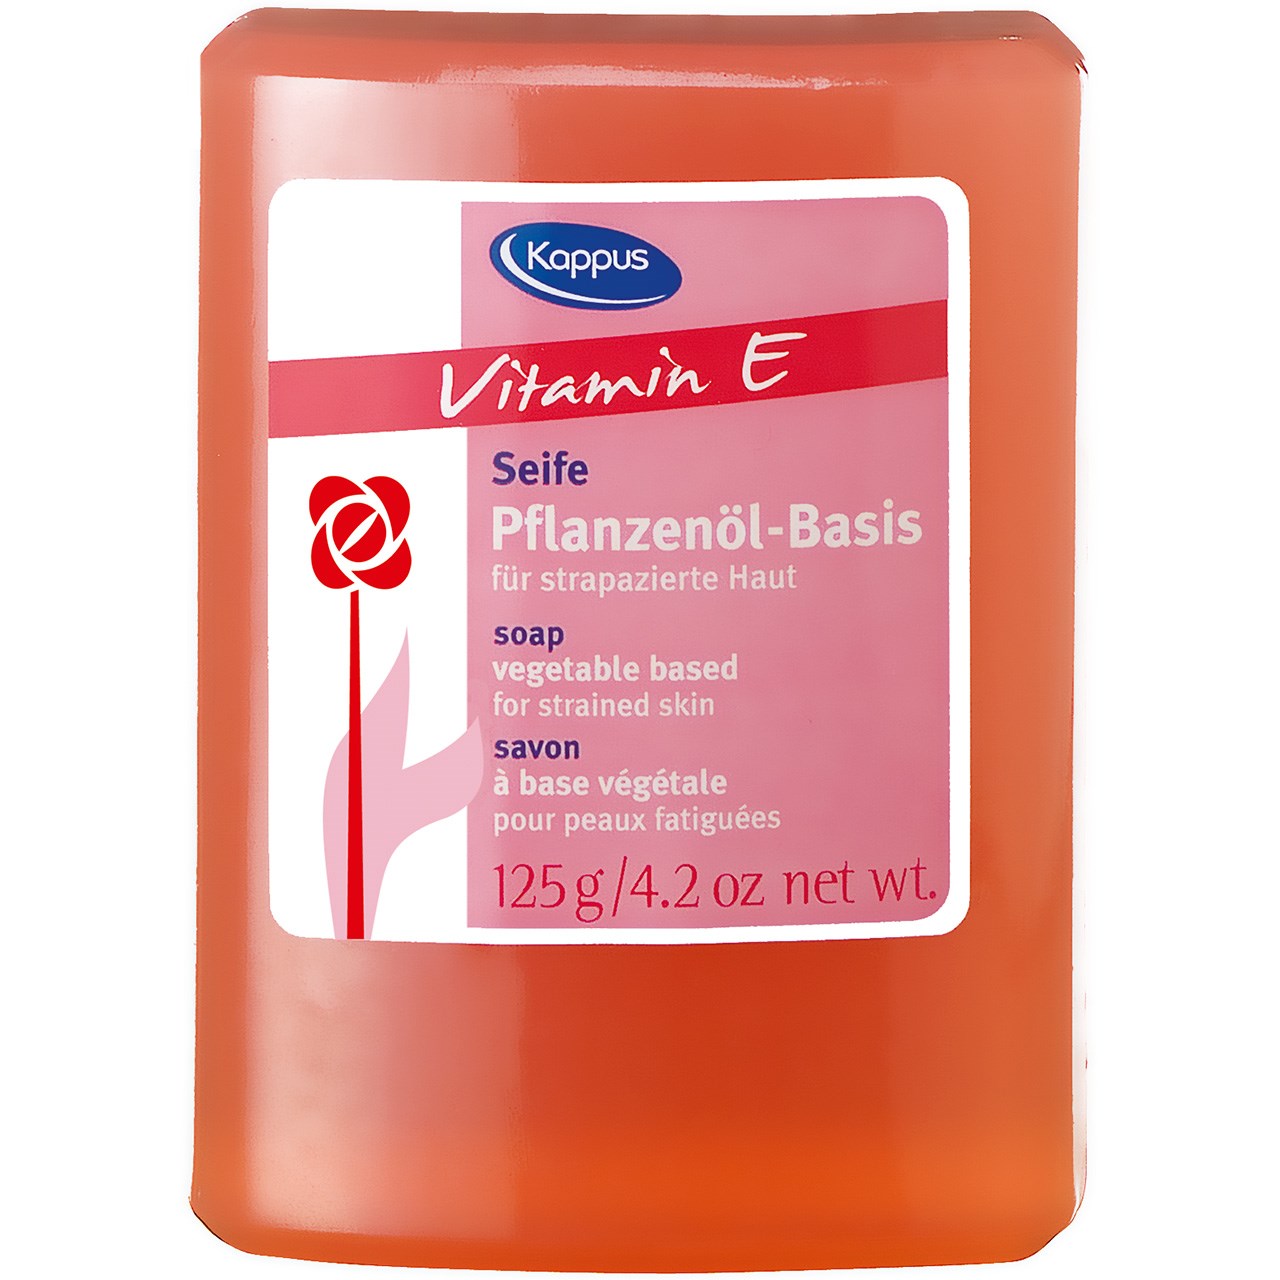 صابون کاپوس مدل Vitamin E مقدار 125 گرم